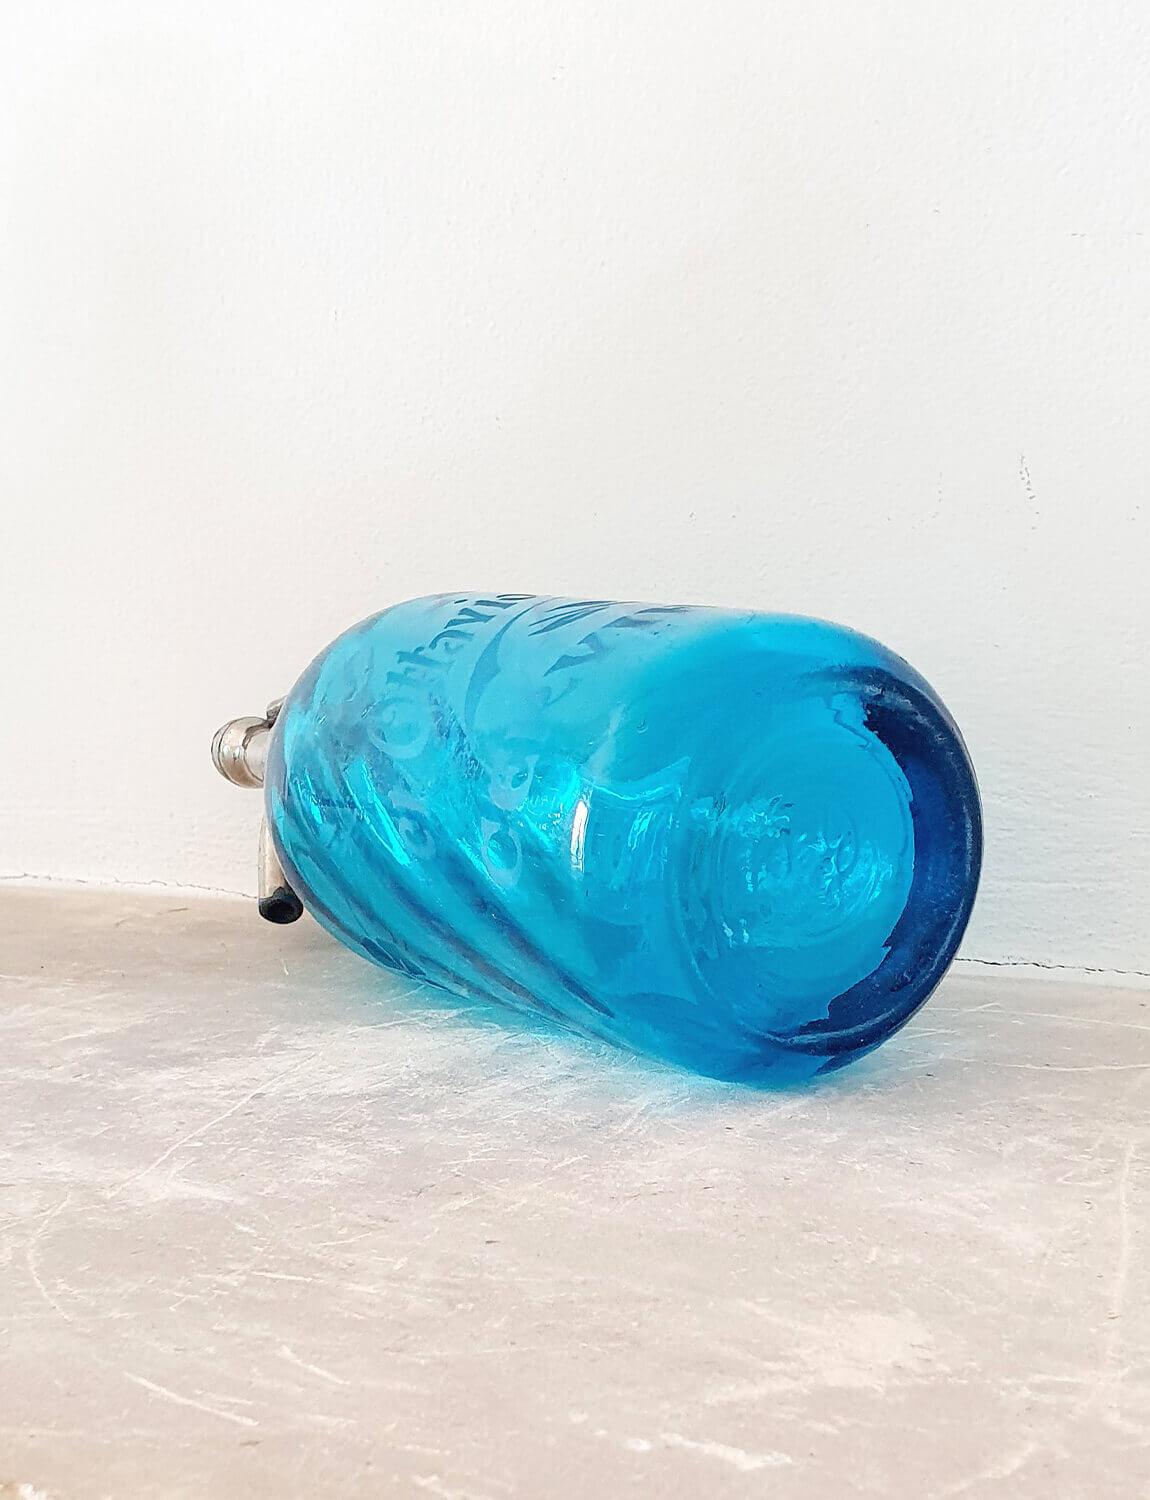 italienisches wasser blaue flasche